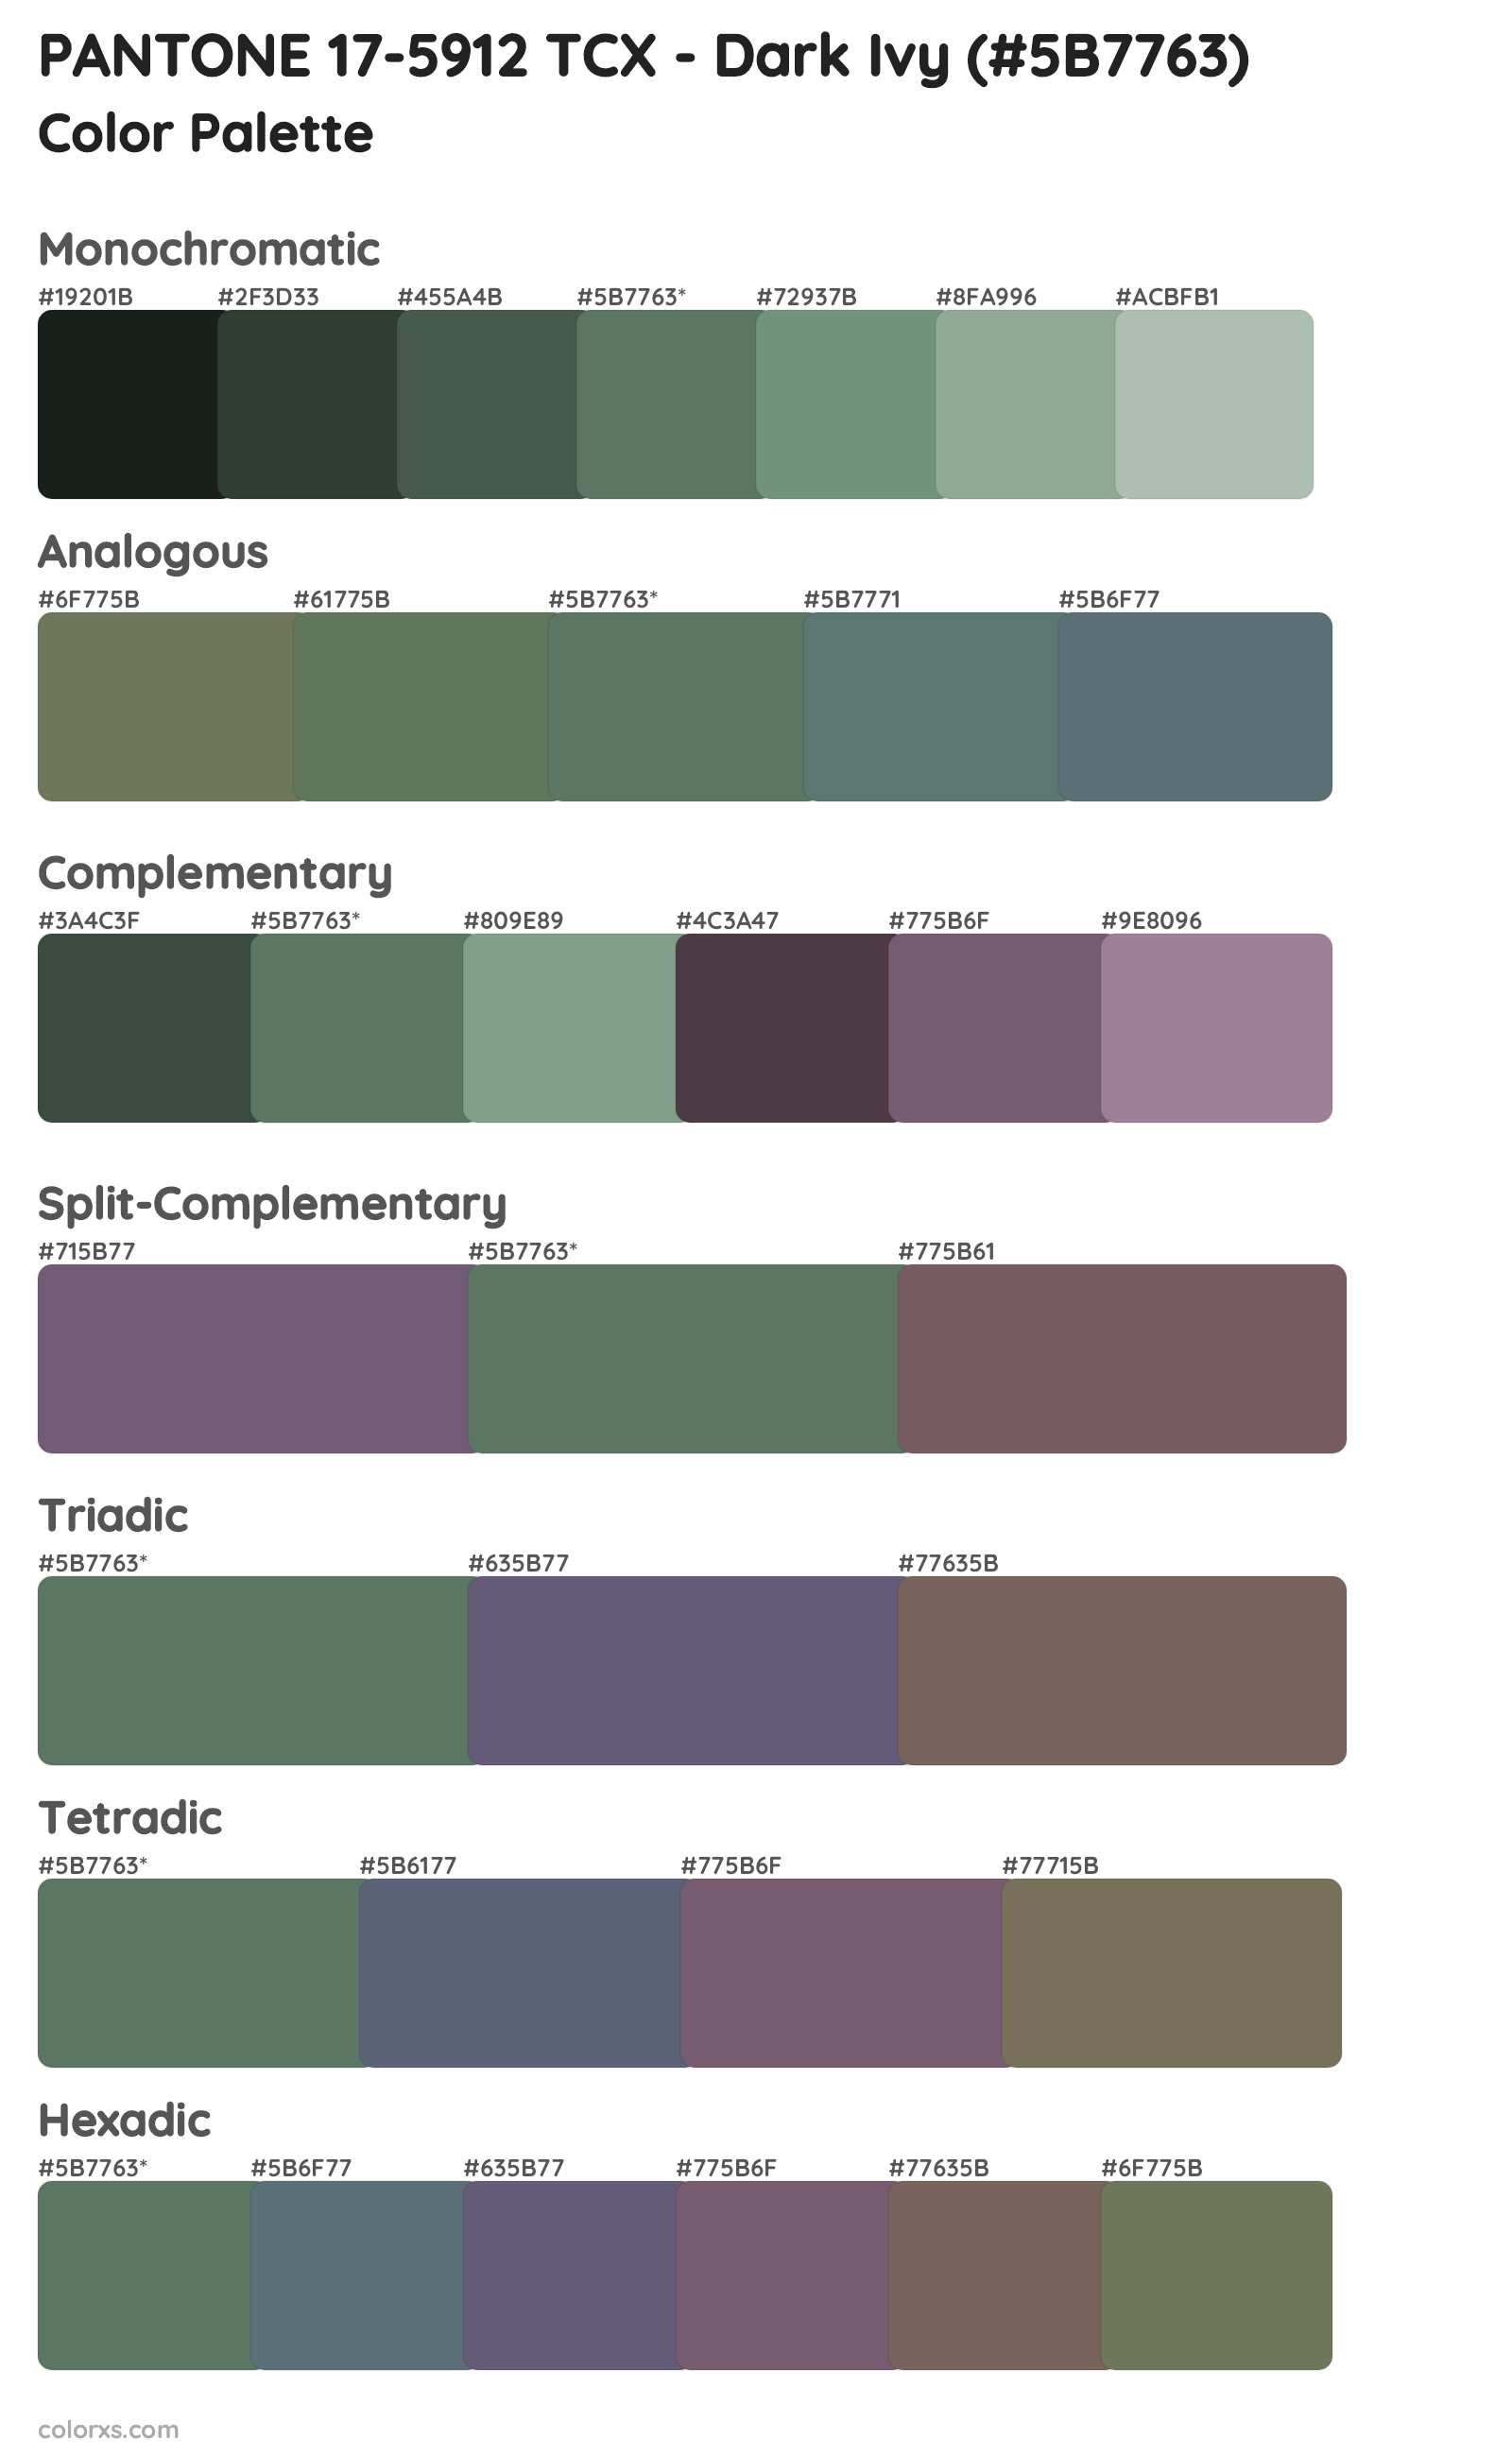 PANTONE 17-5912 TCX - Dark Ivy Color Scheme Palettes